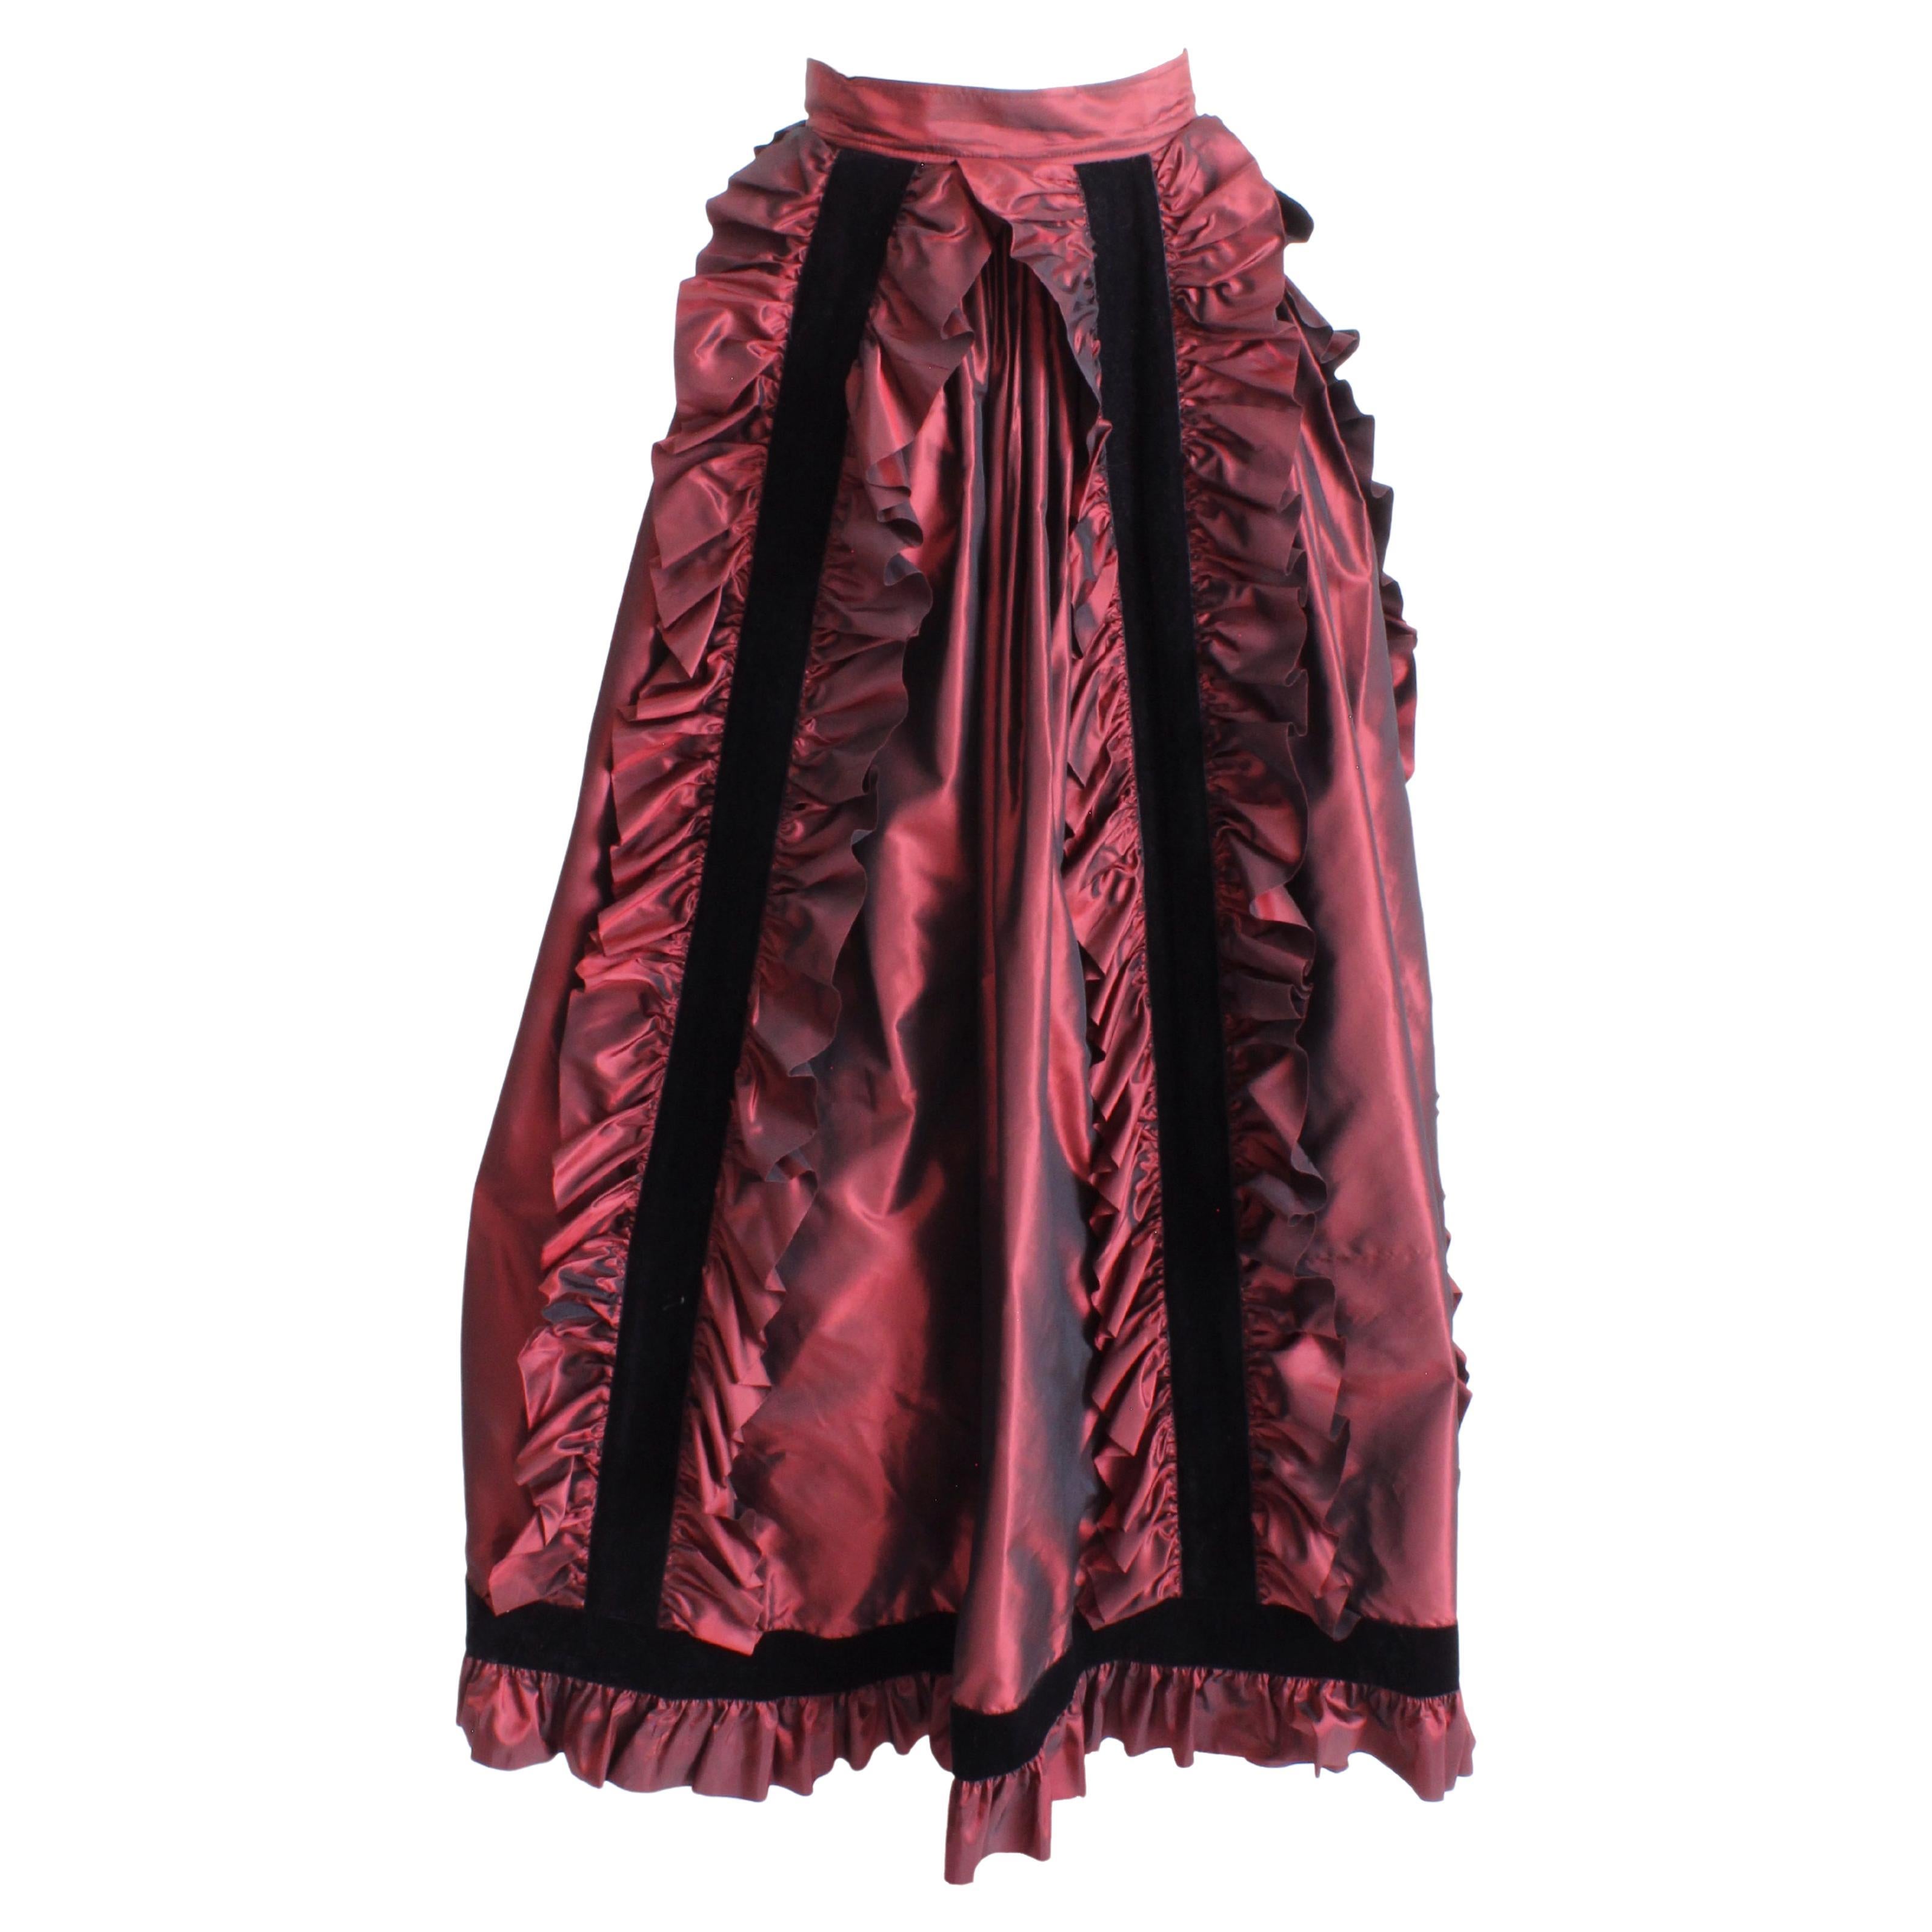 Yves Saint Laurent Skirt Long Burgundy Taffeta Ruffles Black Velvet Vintage  1